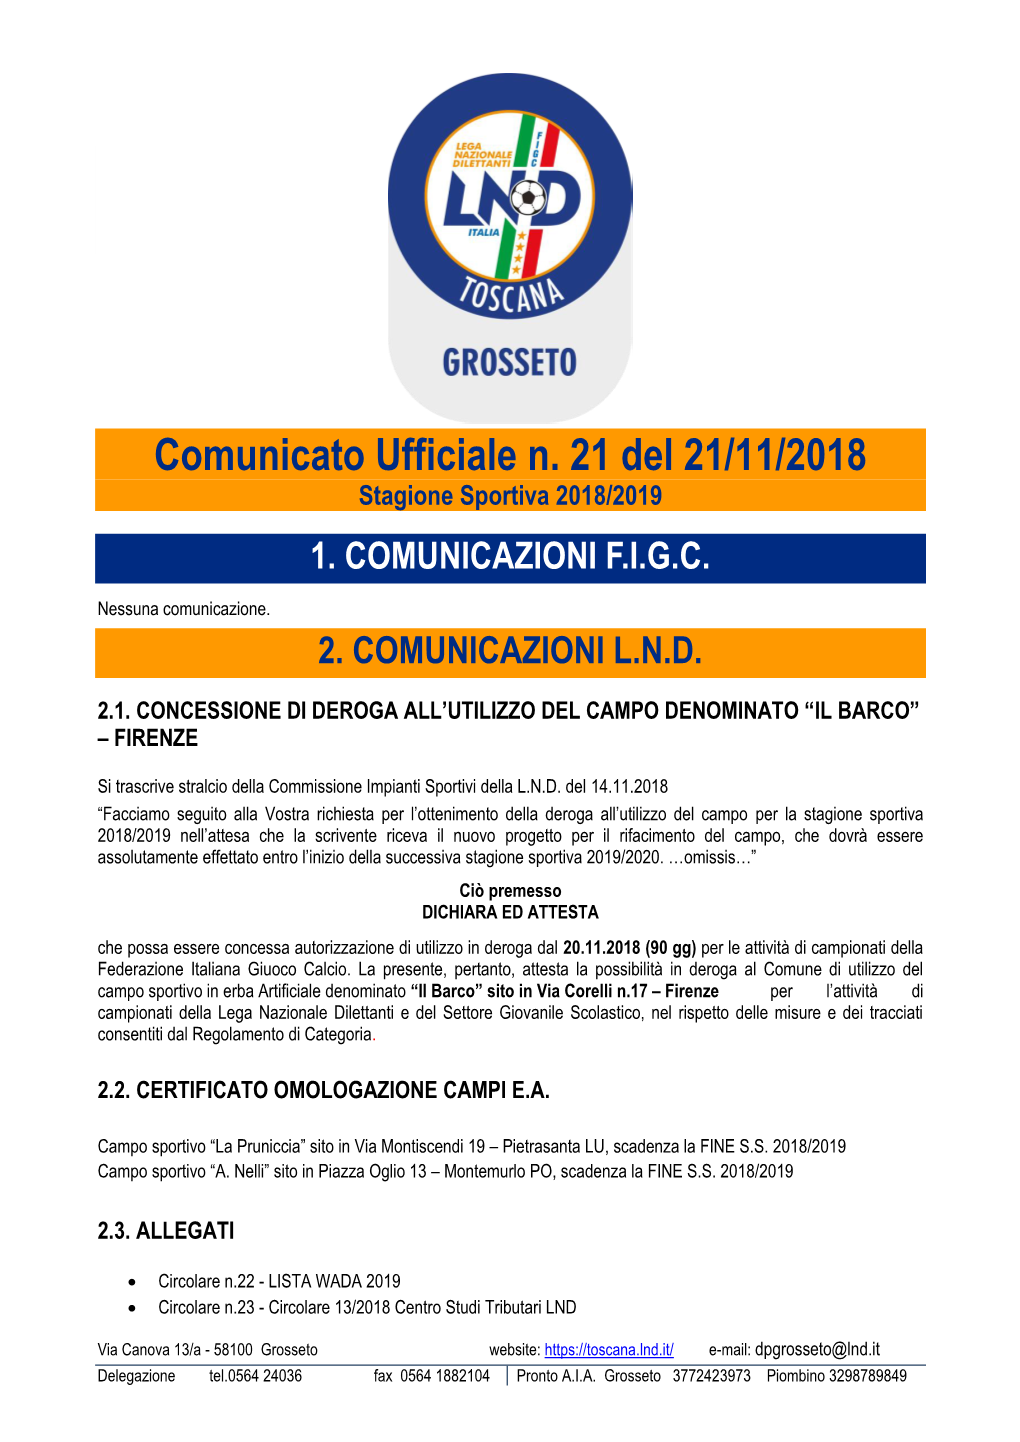 Comunicato Ufficiale N. 21 Del 21/11/2018 Stagione Sportiva 2018/2019